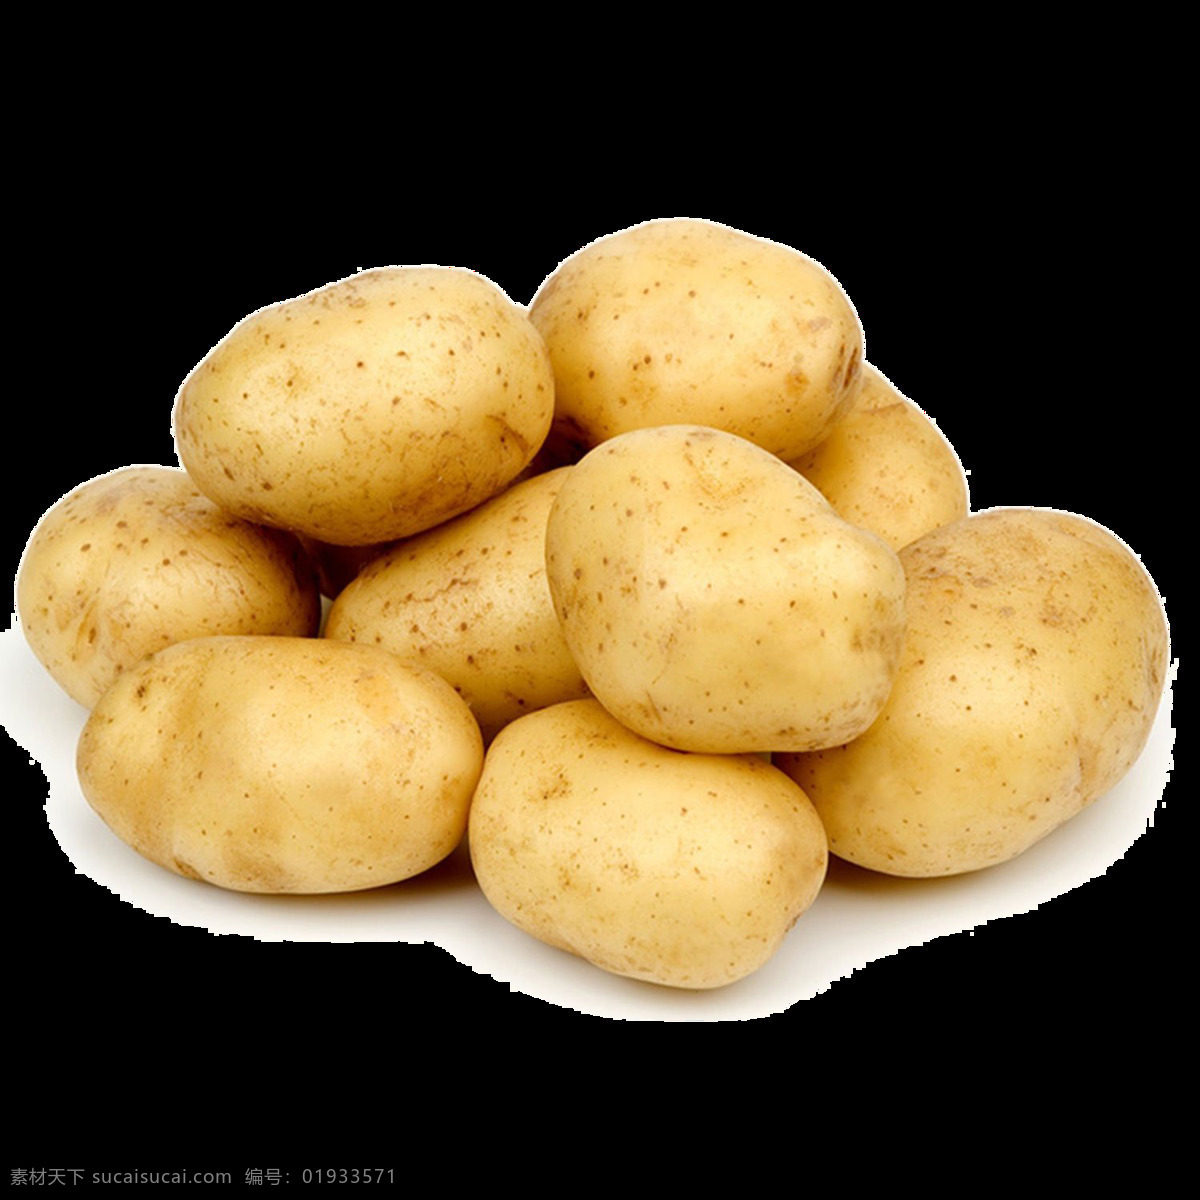 新土豆 新鲜土豆 马铃薯 土豆素材 土豆图片 北大青鸟 生物世界 蔬菜